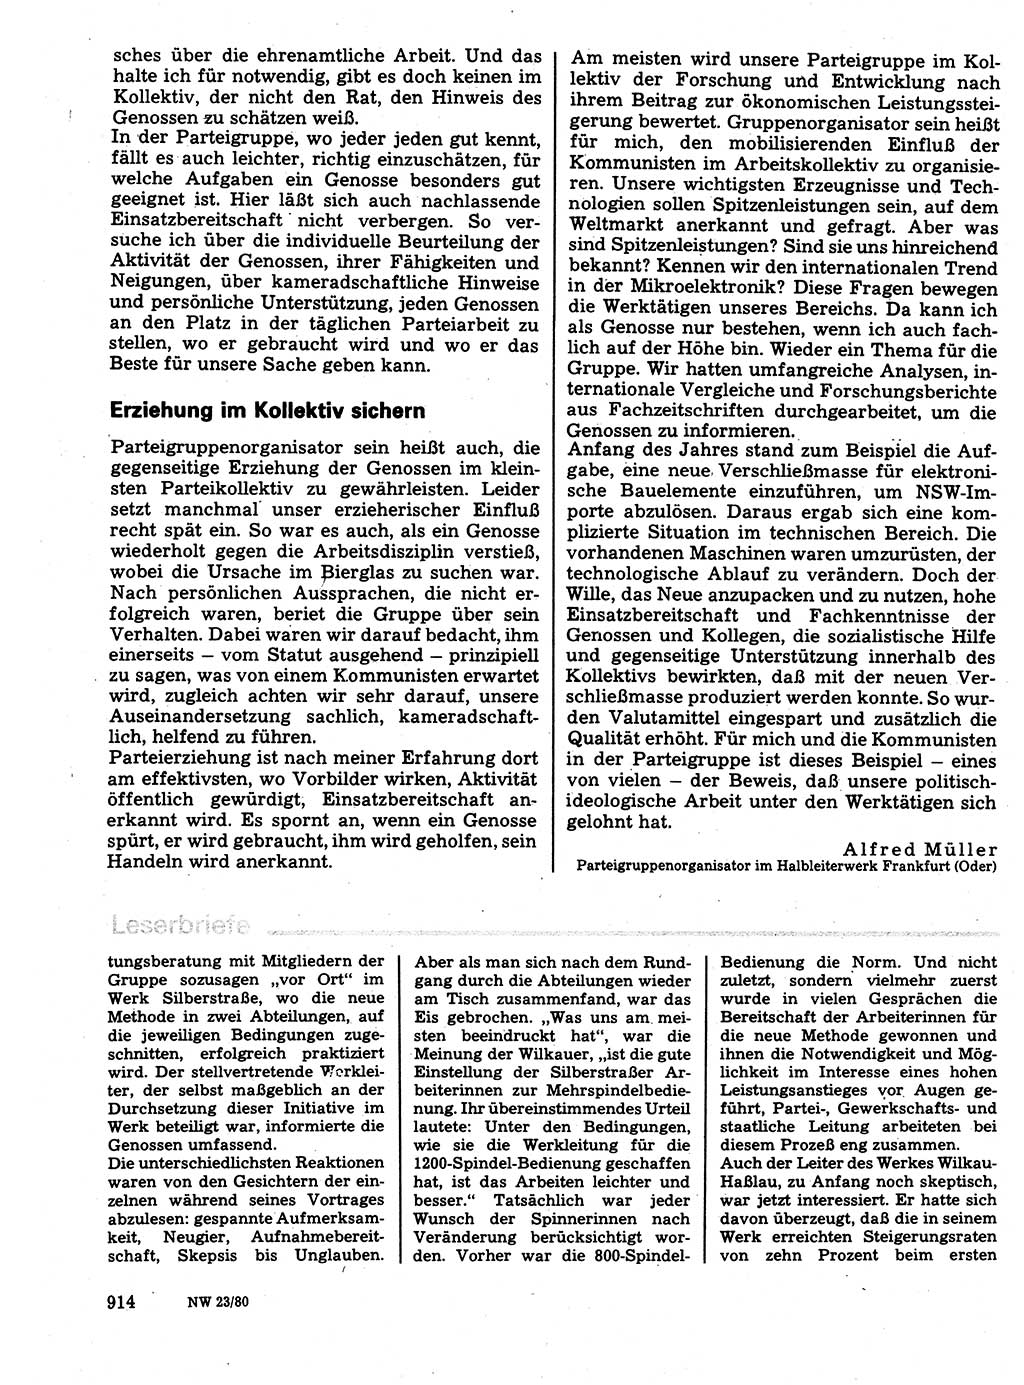 Neuer Weg (NW), Organ des Zentralkomitees (ZK) der SED (Sozialistische Einheitspartei Deutschlands) für Fragen des Parteilebens, 35. Jahrgang [Deutsche Demokratische Republik (DDR)] 1980, Seite 914 (NW ZK SED DDR 1980, S. 914)